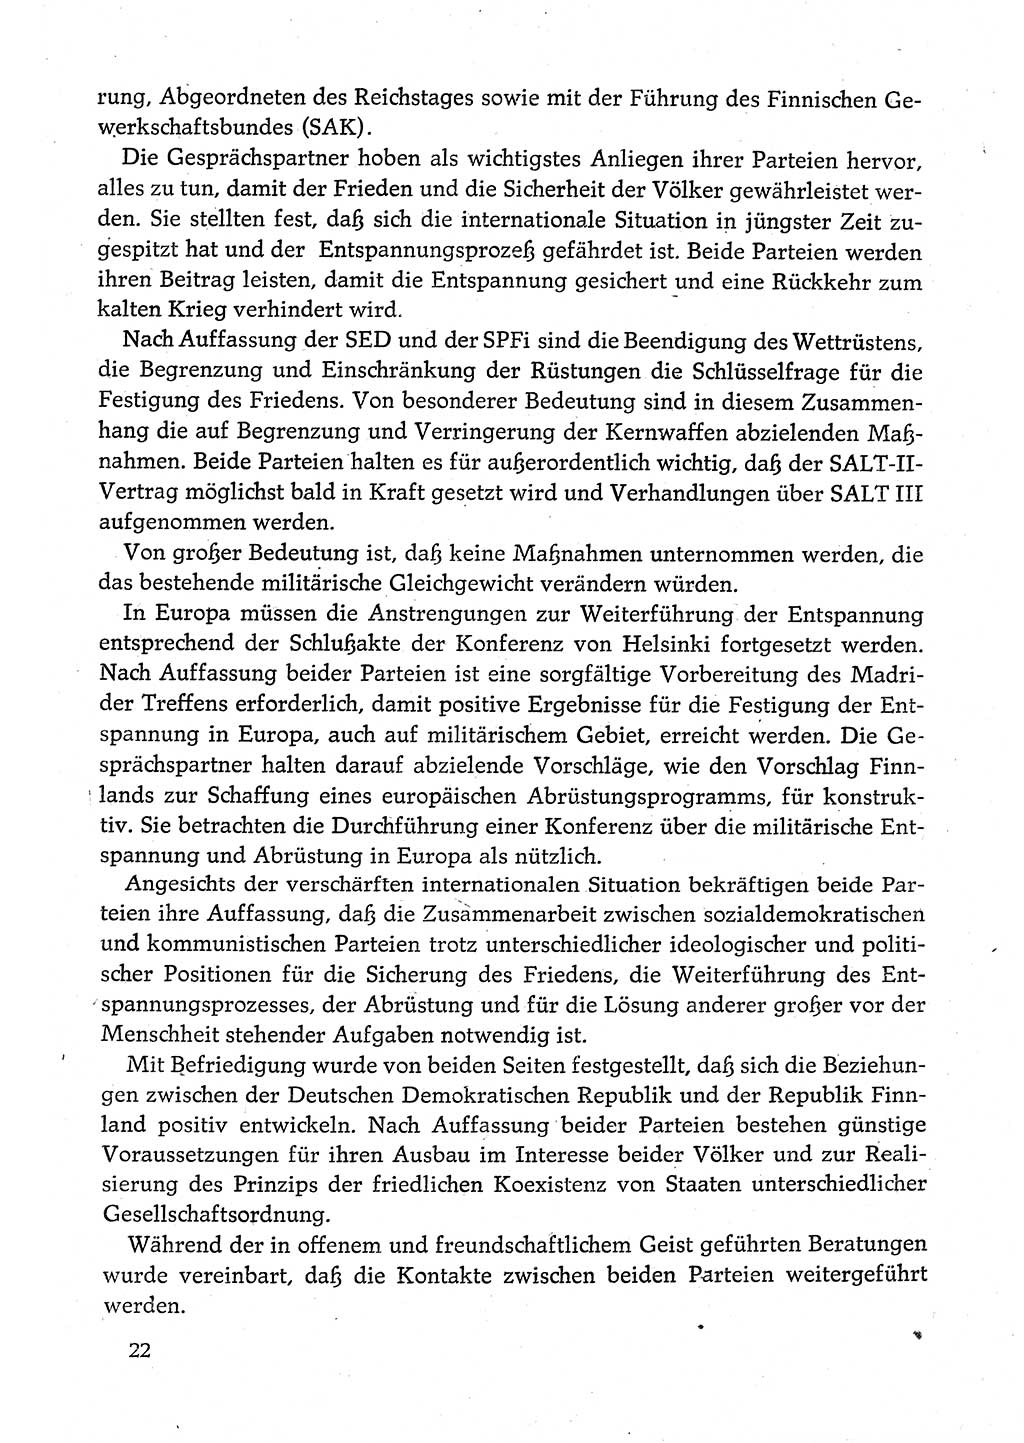 Dokumente der Sozialistischen Einheitspartei Deutschlands (SED) [Deutsche Demokratische Republik (DDR)] 1980-1981, Seite 22 (Dok. SED DDR 1980-1981, S. 22)